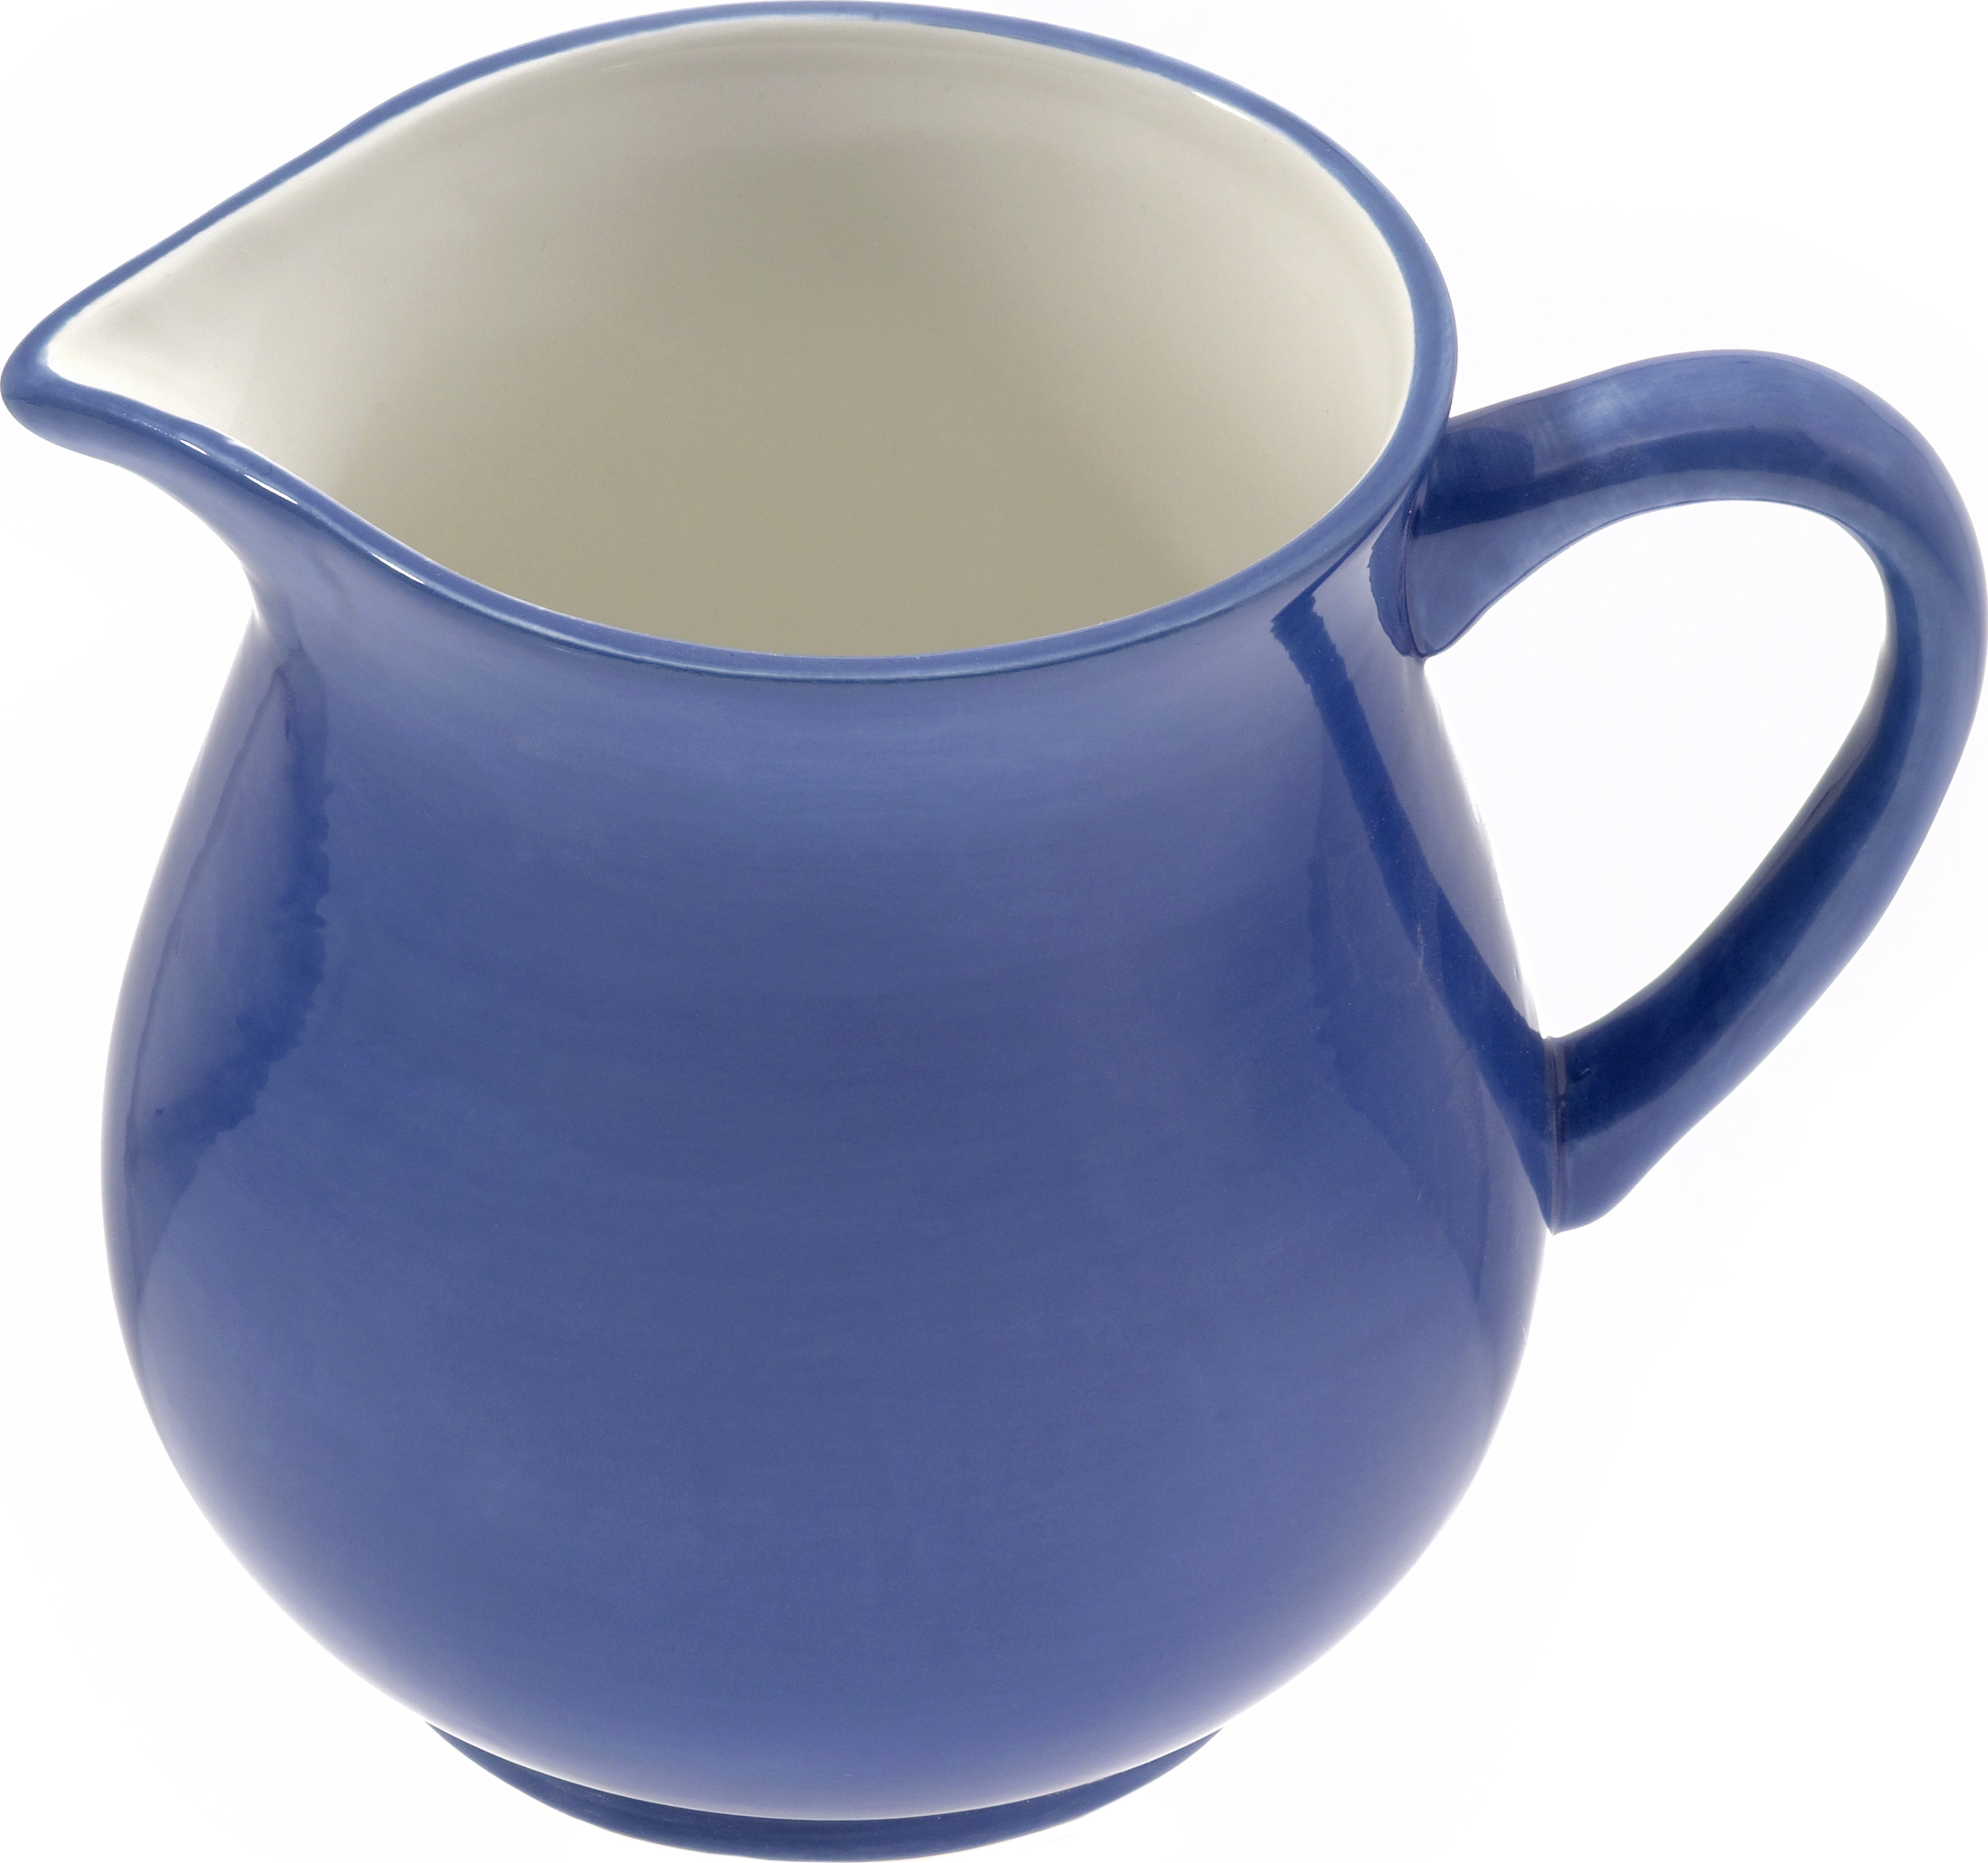 Keramik Krug 0,5 ltr. "blau/weiß" - Magu 111 911